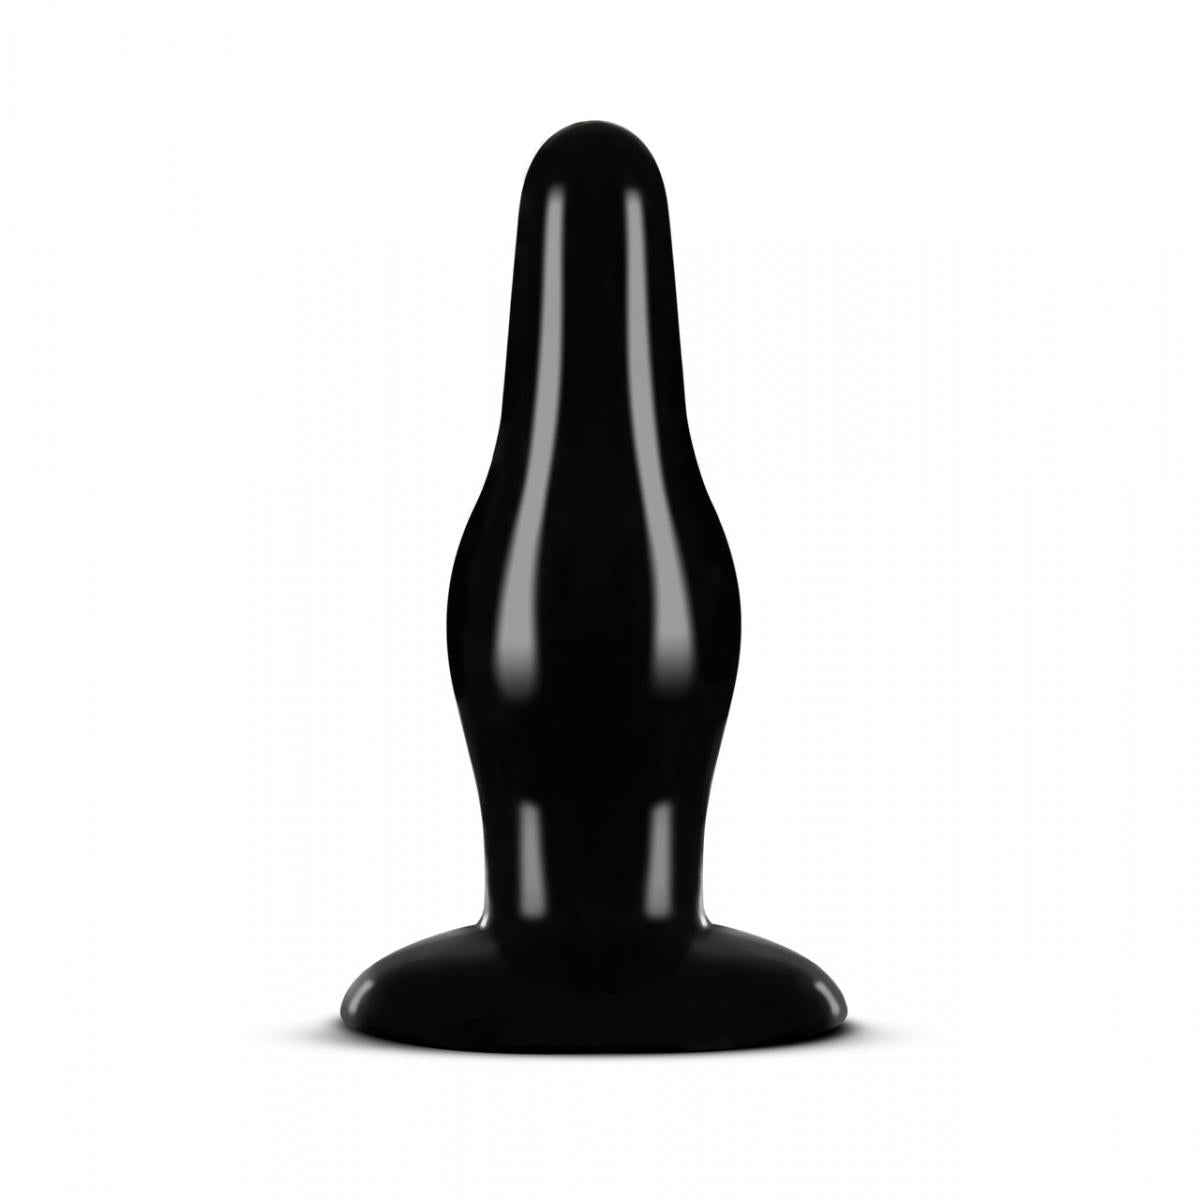 Zwarte butt plug met slanke schacht en smalle punt, gemaakt van siliconen, breng je makkelijk in. De butt plug heeft het formaat medium en is van Anal Adventures. Te koop bij Flavourez.